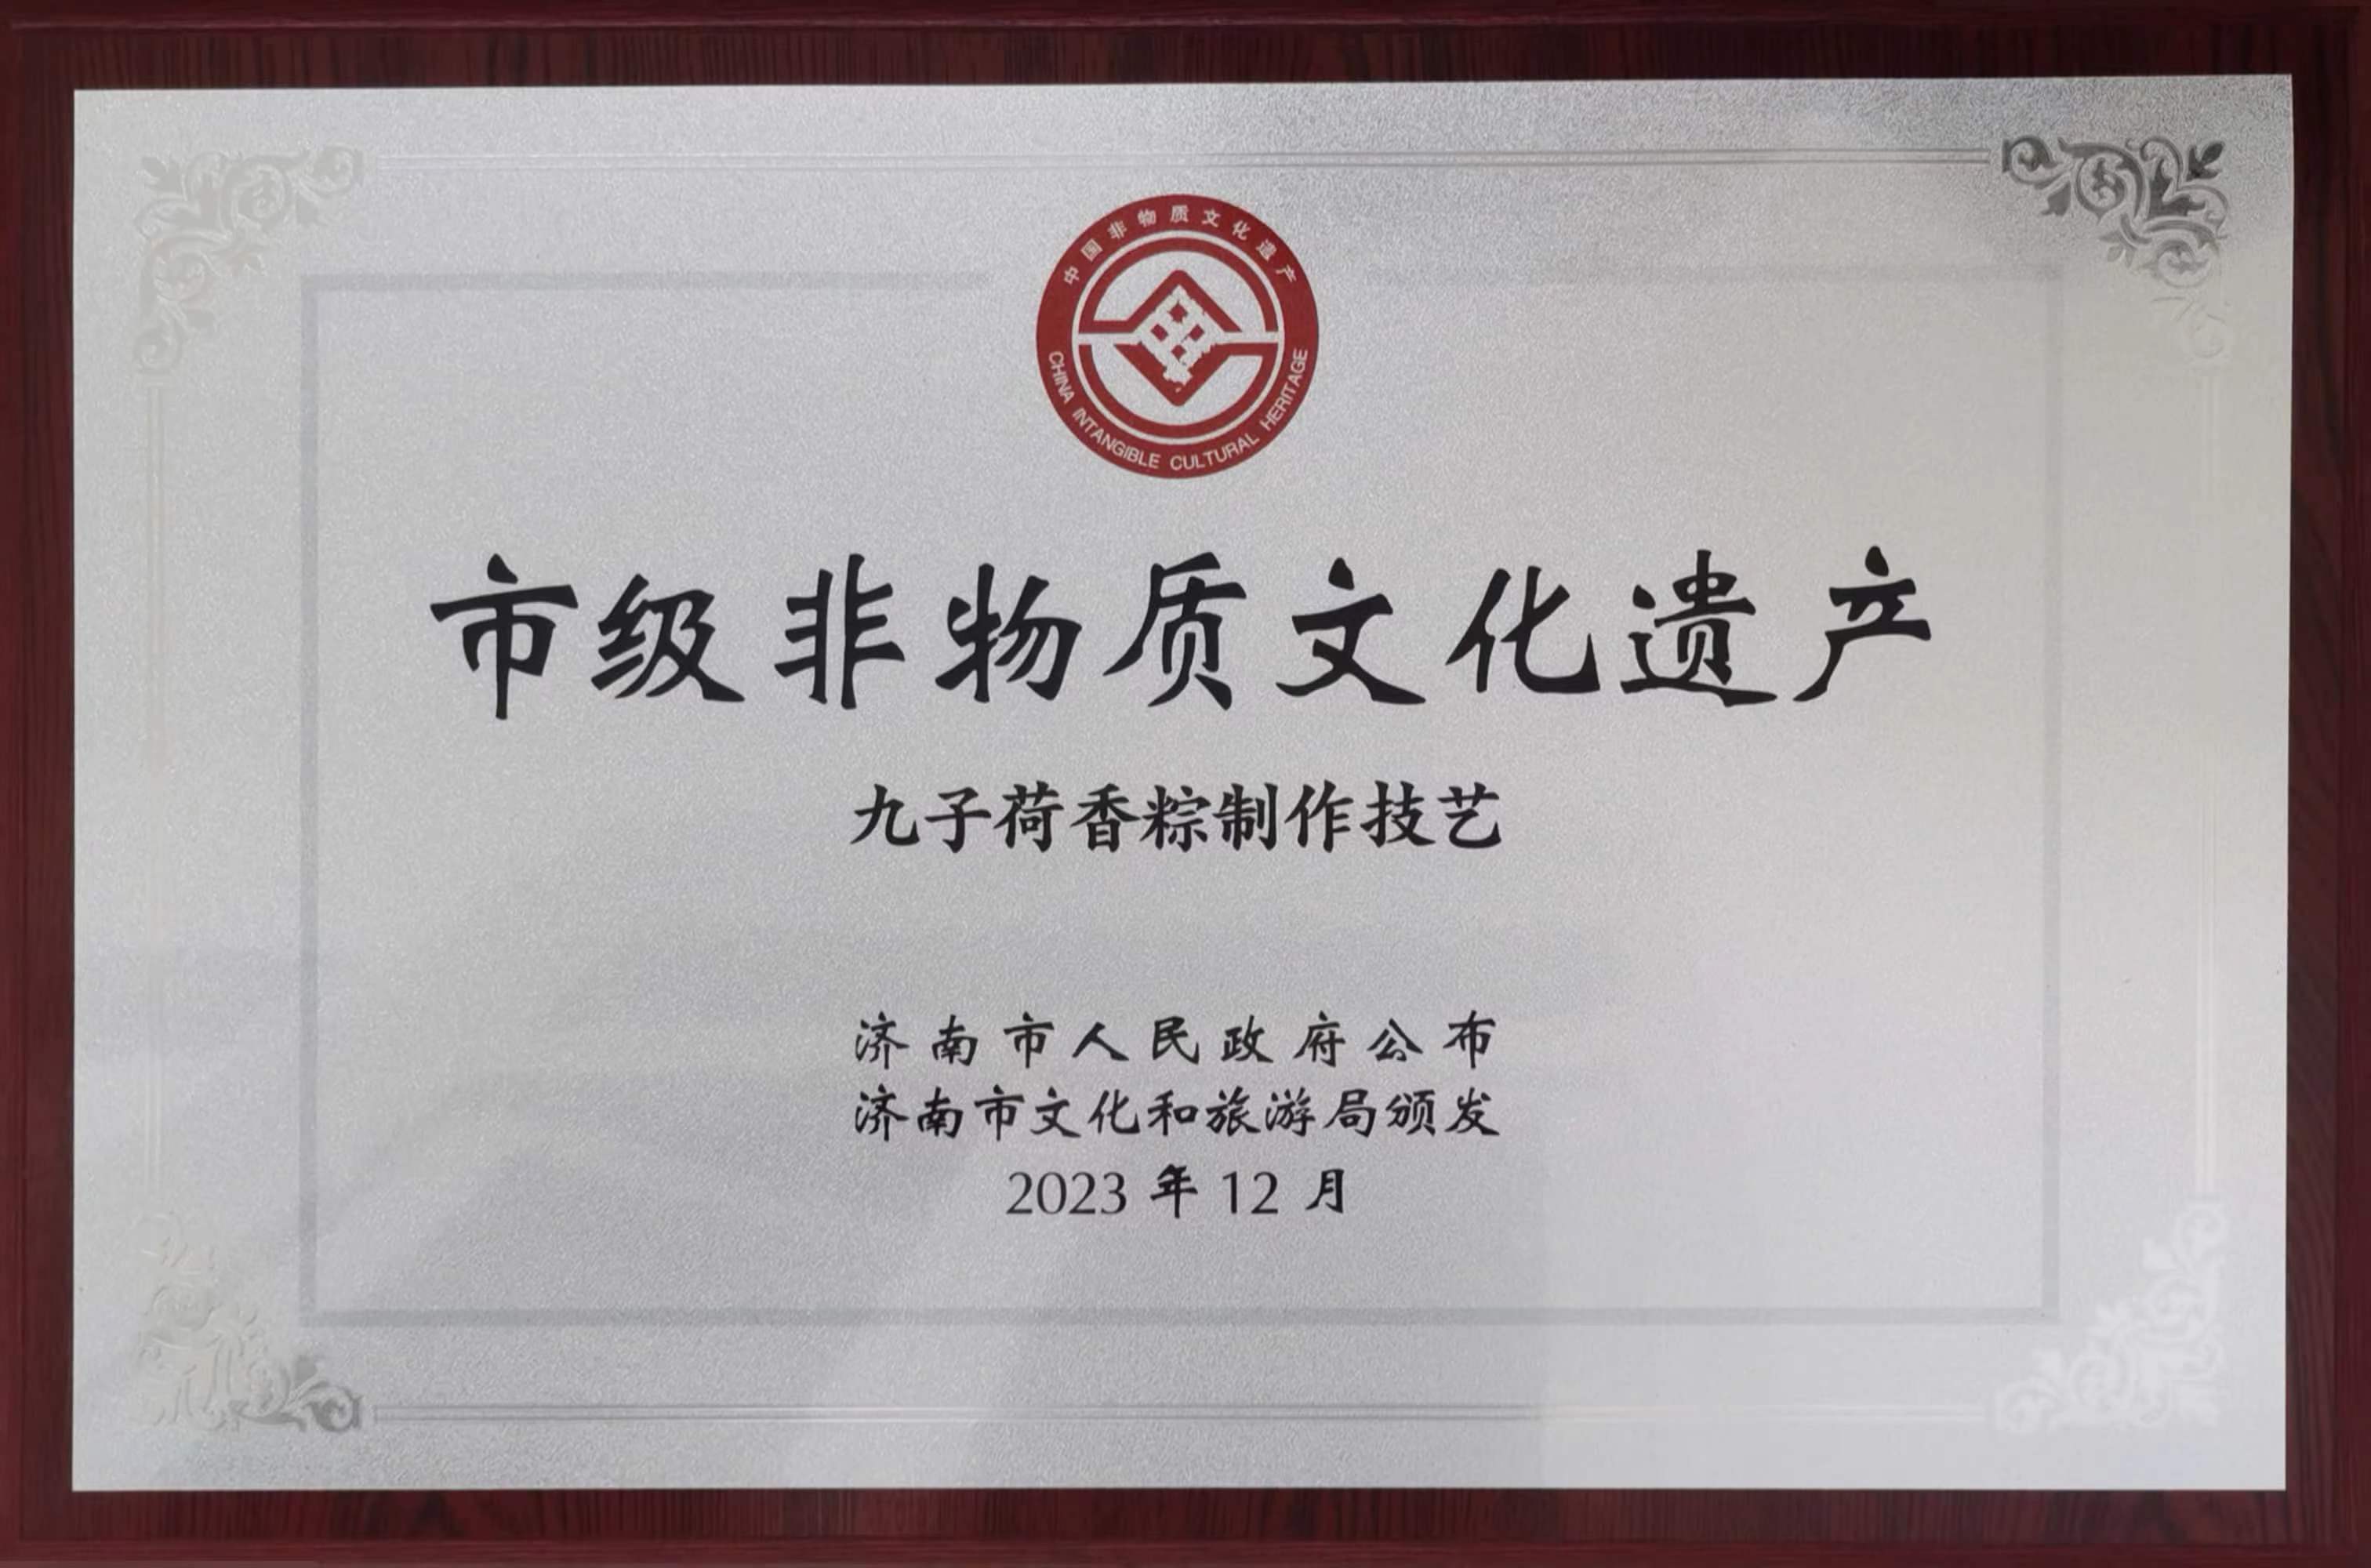 2023年12月“九子荷香”粽制作技艺入选市级非物质文化遗产名录